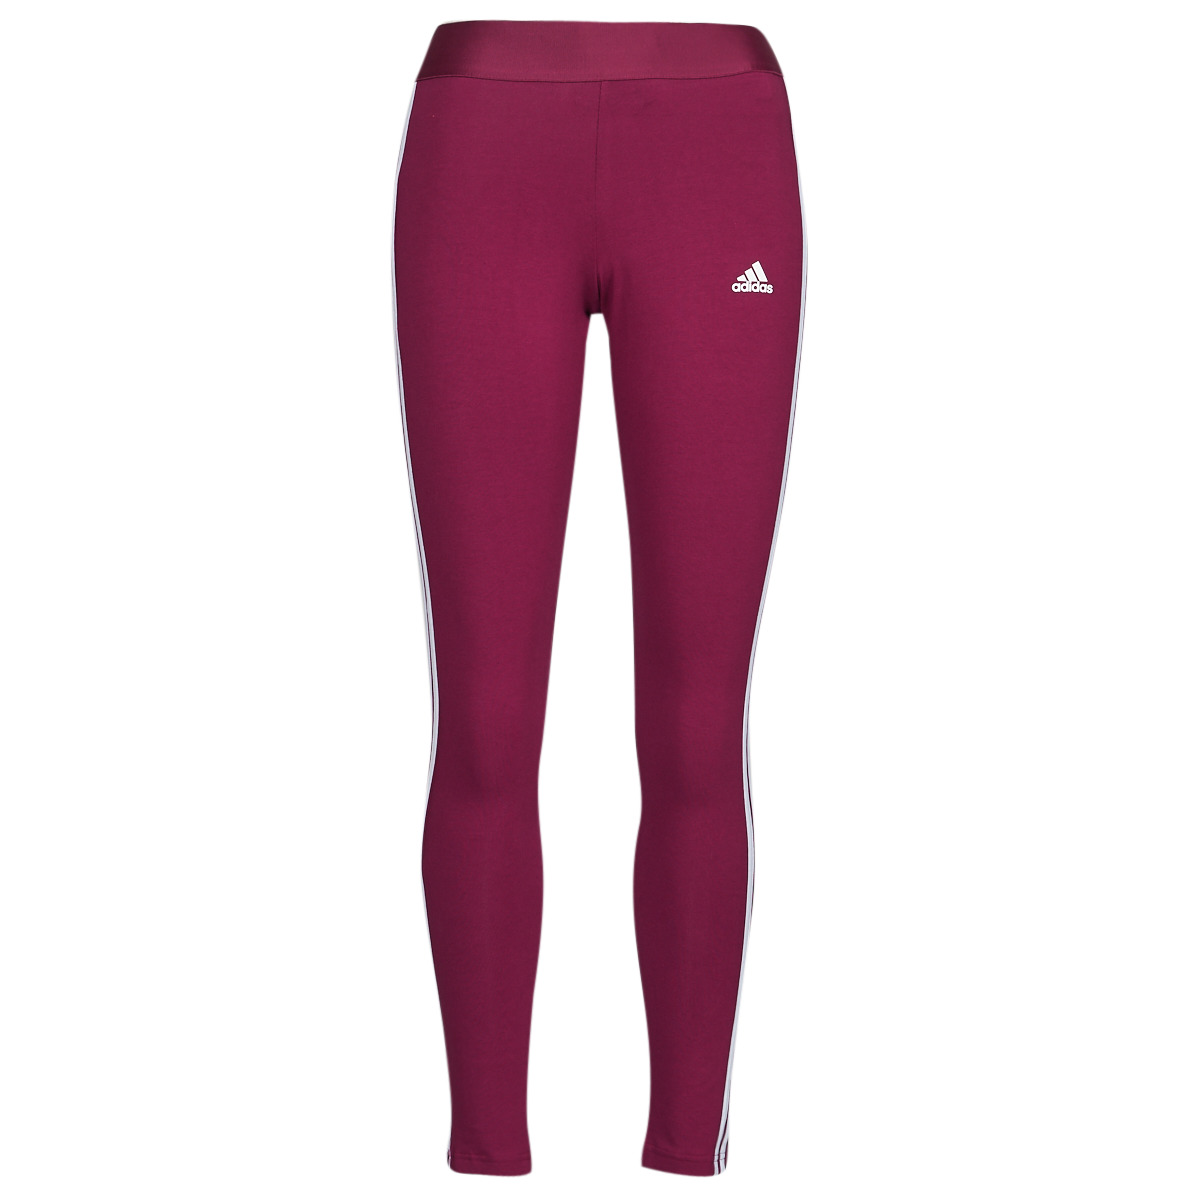 Adidas Sportswear legacy burgundy/white 3 Stripes Leggings yqtk44cH